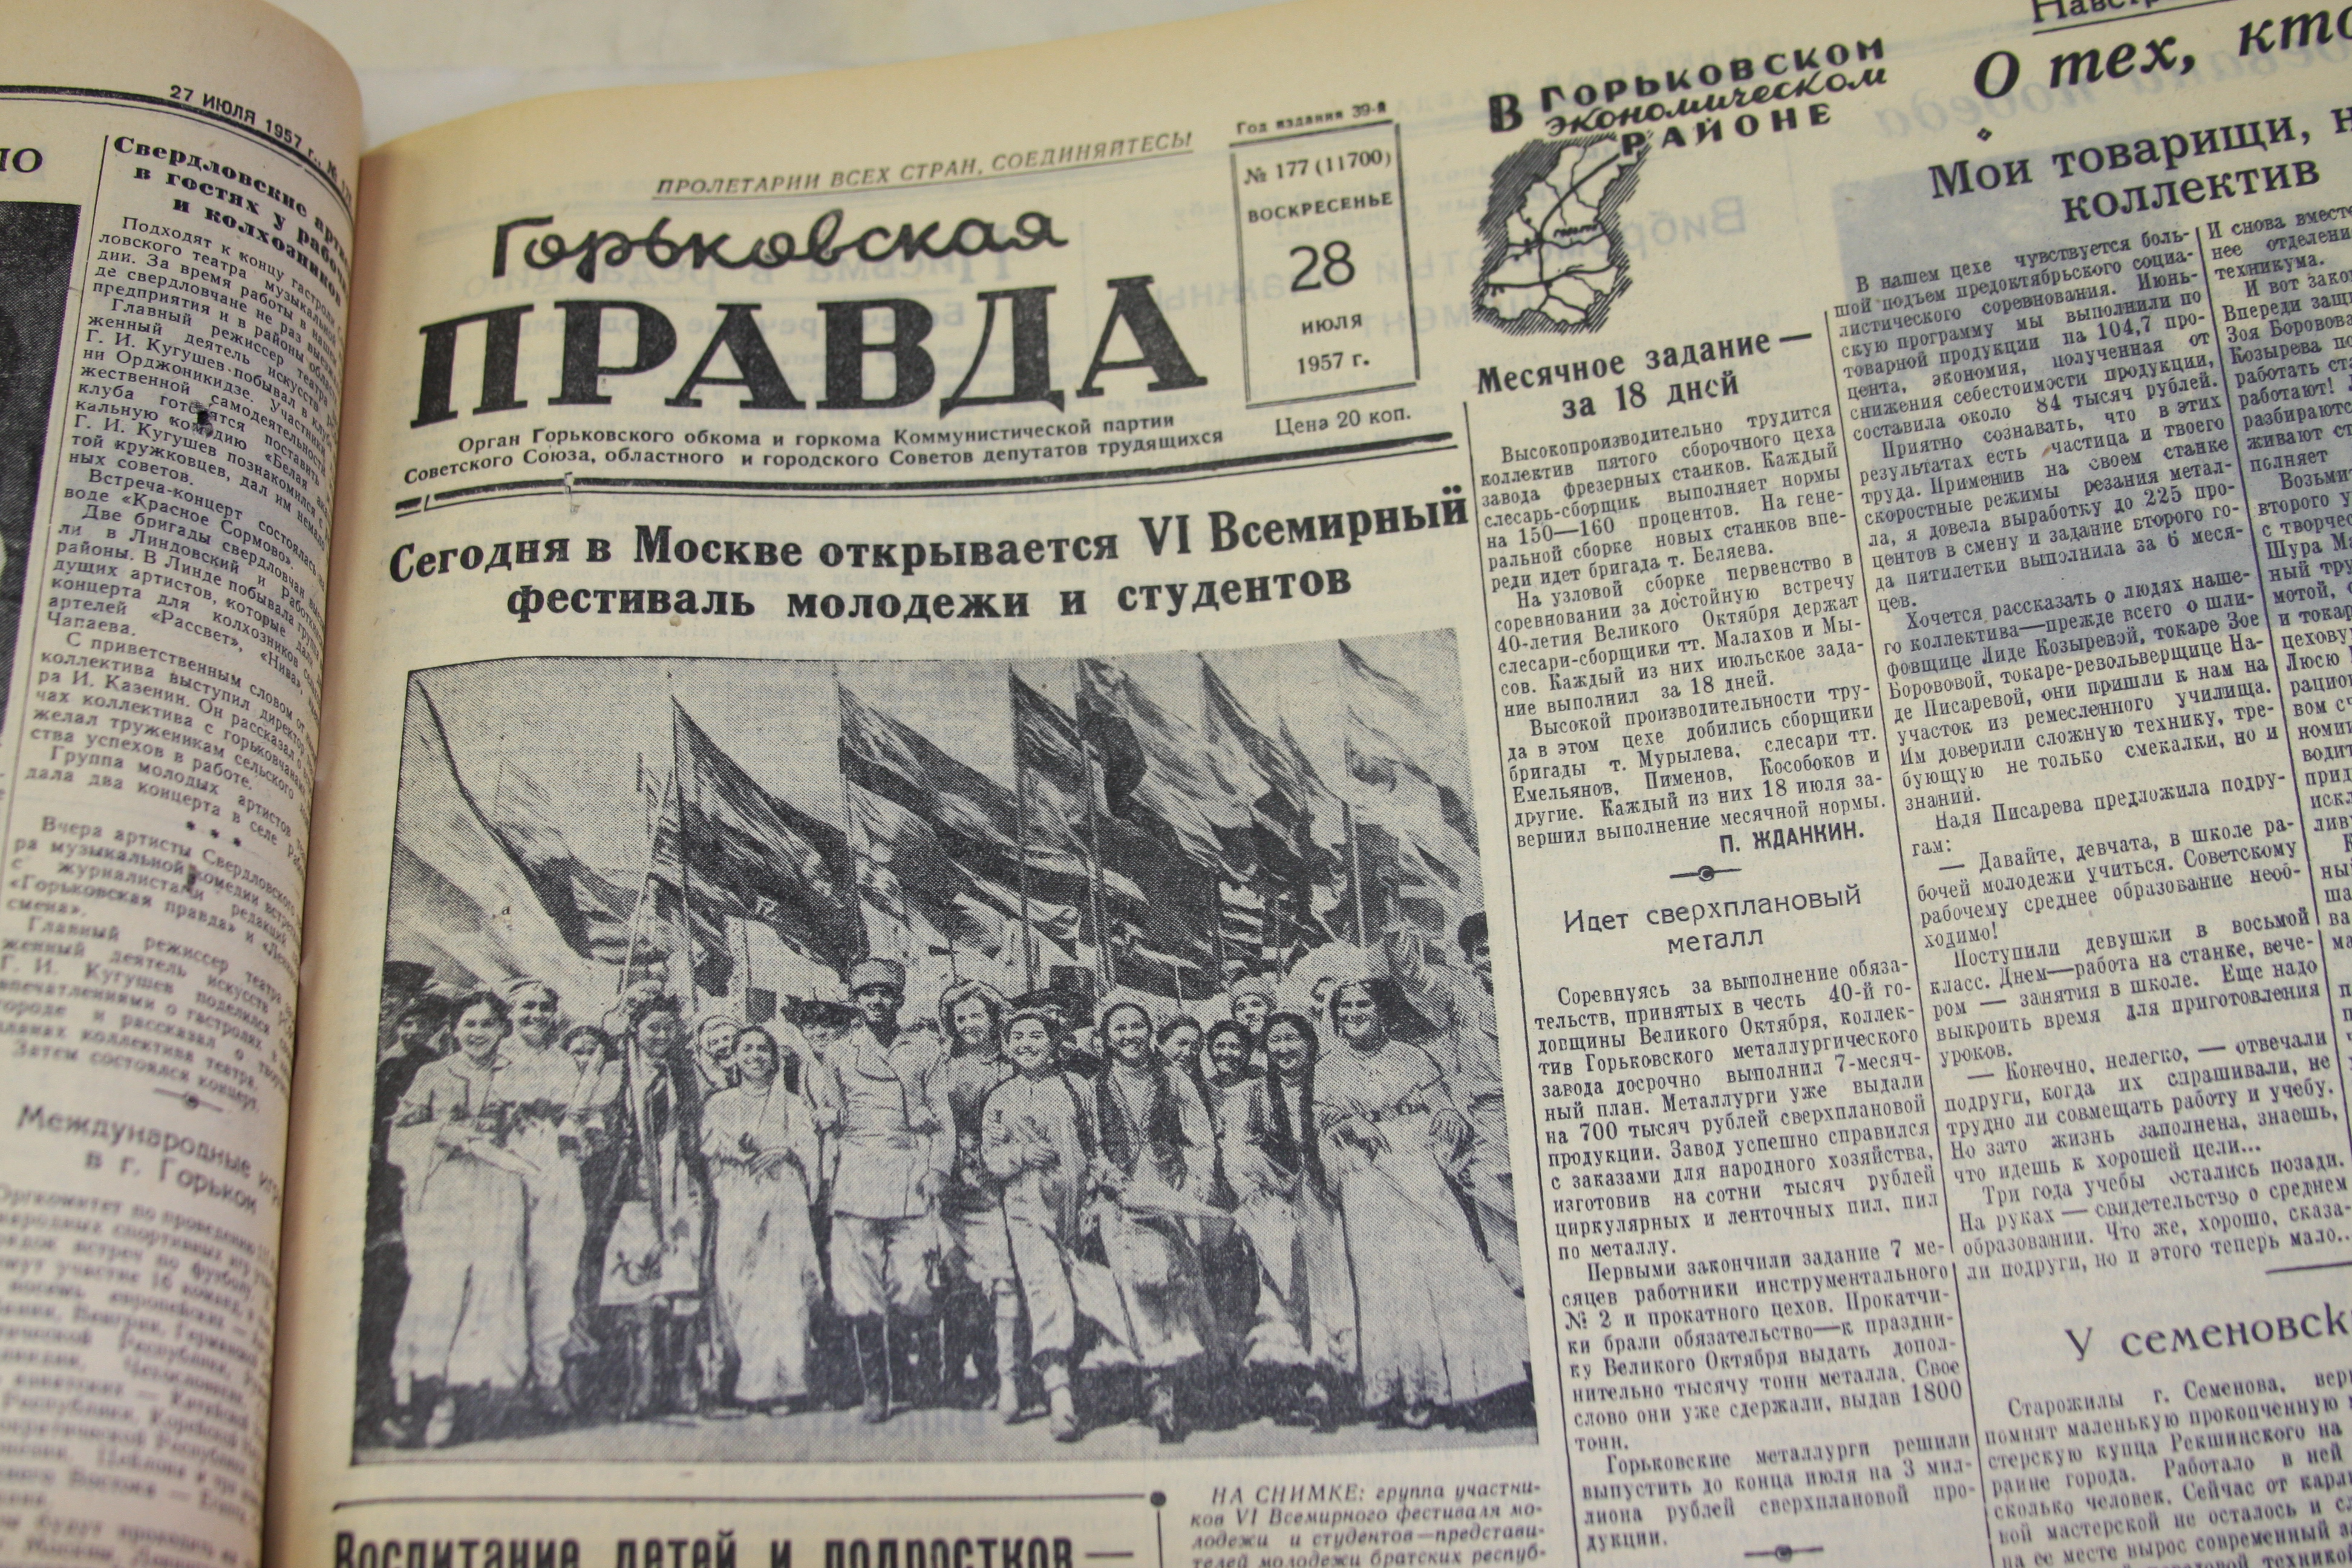 Всемирный Московский Молодежный. Страницы «Горьковской правды» 1957 года